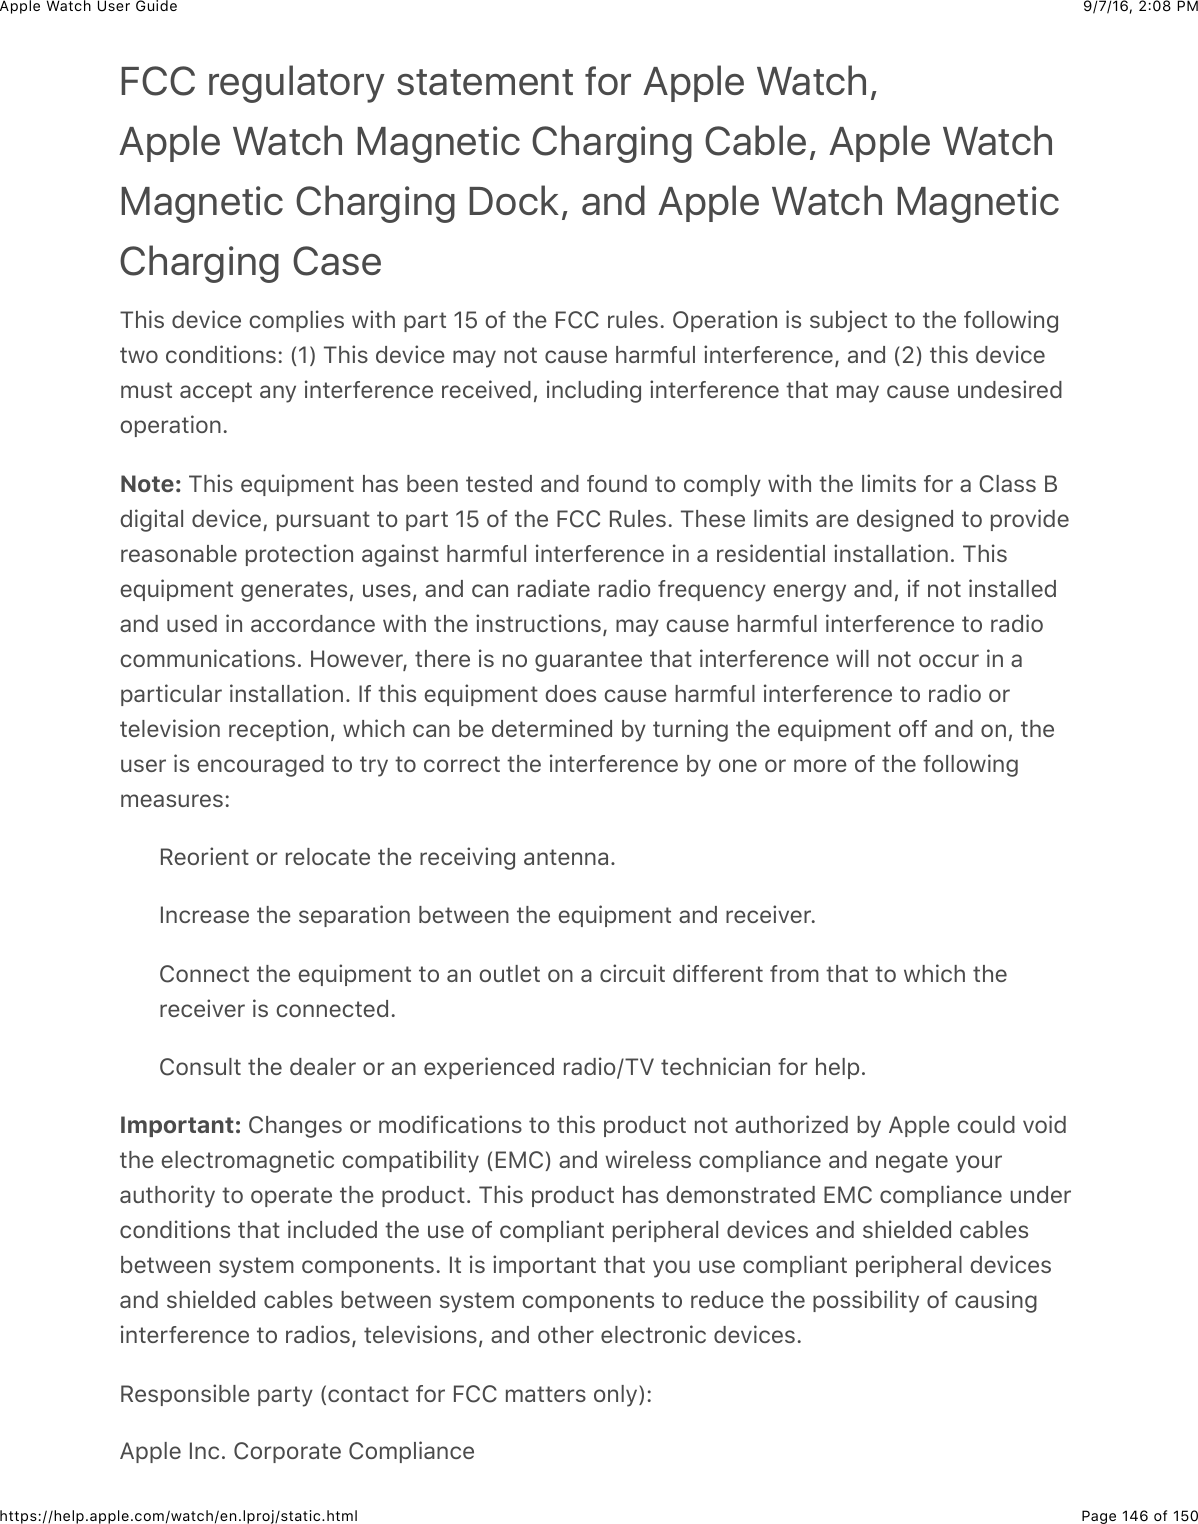 9/7/16, 2)08 PMApple Watch User GuidePage 146 of 150https://help.apple.com/watch/en.lproj/static.htmlFCC regulatory statement for Apple Watch,Apple Watch Magnetic Charging Cable, Apple WatchMagnetic Charging Dock, and Apple Watch MagneticCharging Case1)+$&amp;0%.+(%&amp;(#52&quot;+%$&amp;7+3)&amp;2&apos;*3&amp;]\&amp;#@&amp;3)%&amp;E!!&amp;*4&quot;%$C&amp;L2%*&apos;3+#,&amp;+$&amp;$4BO%(3&amp;3#&amp;3)%&amp;@#&quot;&quot;#7+,-37#&amp;(#,0+3+#,$e&amp;P]R&amp;1)+$&amp;0%.+(%&amp;5&apos;/&amp;,#3&amp;(&apos;4$%&amp;)&apos;*5@4&quot;&amp;+,3%*@%*%,(%J&amp;&apos;,0&amp;PQR&amp;3)+$&amp;0%.+(%54$3&amp;&apos;((%23&amp;&apos;,/&amp;+,3%*@%*%,(%&amp;*%(%+.%0J&amp;+,(&quot;40+,-&amp;+,3%*@%*%,(%&amp;3)&apos;3&amp;5&apos;/&amp;(&apos;4$%&amp;4,0%$+*%0#2%*&apos;3+#,CNote: 1)+$&amp;%X4+25%,3&amp;)&apos;$&amp;B%%,&amp;3%$3%0&amp;&apos;,0&amp;@#4,0&amp;3#&amp;(#52&quot;/&amp;7+3)&amp;3)%&amp;&quot;+5+3$&amp;@#*&amp;&apos;&amp;!&quot;&apos;$$&amp;;0+-+3&apos;&quot;&amp;0%.+(%J&amp;24*$4&apos;,3&amp;3#&amp;2&apos;*3&amp;]\&amp;#@&amp;3)%&amp;E!!&amp;H4&quot;%$C&amp;1)%$%&amp;&quot;+5+3$&amp;&apos;*%&amp;0%$+-,%0&amp;3#&amp;2*#.+0%*%&apos;$#,&apos;B&quot;%&amp;2*#3%(3+#,&amp;&apos;-&apos;+,$3&amp;)&apos;*5@4&quot;&amp;+,3%*@%*%,(%&amp;+,&amp;&apos;&amp;*%$+0%,3+&apos;&quot;&amp;+,$3&apos;&quot;&quot;&apos;3+#,C&amp;1)+$%X4+25%,3&amp;-%,%*&apos;3%$J&amp;4$%$J&amp;&apos;,0&amp;(&apos;,&amp;*&apos;0+&apos;3%&amp;*&apos;0+#&amp;@*%X4%,(/&amp;%,%*-/&amp;&apos;,0J&amp;+@&amp;,#3&amp;+,$3&apos;&quot;&quot;%0&apos;,0&amp;4$%0&amp;+,&amp;&apos;((#*0&apos;,(%&amp;7+3)&amp;3)%&amp;+,$3*4(3+#,$J&amp;5&apos;/&amp;(&apos;4$%&amp;)&apos;*5@4&quot;&amp;+,3%*@%*%,(%&amp;3#&amp;*&apos;0+#(#554,+(&apos;3+#,$C&amp;9#7%.%*J&amp;3)%*%&amp;+$&amp;,#&amp;-4&apos;*&apos;,3%%&amp;3)&apos;3&amp;+,3%*@%*%,(%&amp;7+&quot;&quot;&amp;,#3&amp;#((4*&amp;+,&amp;&apos;2&apos;*3+(4&quot;&apos;*&amp;+,$3&apos;&quot;&quot;&apos;3+#,C&amp;Y@&amp;3)+$&amp;%X4+25%,3&amp;0#%$&amp;(&apos;4$%&amp;)&apos;*5@4&quot;&amp;+,3%*@%*%,(%&amp;3#&amp;*&apos;0+#&amp;#*3%&quot;%.+$+#,&amp;*%(%23+#,J&amp;7)+()&amp;(&apos;,&amp;B%&amp;0%3%*5+,%0&amp;B/&amp;34*,+,-&amp;3)%&amp;%X4+25%,3&amp;#@@&amp;&apos;,0&amp;#,J&amp;3)%4$%*&amp;+$&amp;%,(#4*&apos;-%0&amp;3#&amp;3*/&amp;3#&amp;(#**%(3&amp;3)%&amp;+,3%*@%*%,(%&amp;B/&amp;#,%&amp;#*&amp;5#*%&amp;#@&amp;3)%&amp;@#&quot;&quot;#7+,-5%&apos;$4*%$eH%#*+%,3&amp;#*&amp;*%&quot;#(&apos;3%&amp;3)%&amp;*%(%+.+,-&amp;&apos;,3%,,&apos;CY,(*%&apos;$%&amp;3)%&amp;$%2&apos;*&apos;3+#,&amp;B%37%%,&amp;3)%&amp;%X4+25%,3&amp;&apos;,0&amp;*%(%+.%*C!#,,%(3&amp;3)%&amp;%X4+25%,3&amp;3#&amp;&apos;,&amp;#43&quot;%3&amp;#,&amp;&apos;&amp;(+*(4+3&amp;0+@@%*%,3&amp;@*#5&amp;3)&apos;3&amp;3#&amp;7)+()&amp;3)%*%(%+.%*&amp;+$&amp;(#,,%(3%0C!#,$4&quot;3&amp;3)%&amp;0%&apos;&quot;%*&amp;#*&amp;&apos;,&amp;%U2%*+%,(%0&amp;*&apos;0+#o1_&amp;3%(),+(+&apos;,&amp;@#*&amp;)%&quot;2CImportant: !)&apos;,-%$&amp;#*&amp;5#0+@+(&apos;3+#,$&amp;3#&amp;3)+$&amp;2*#04(3&amp;,#3&amp;&apos;43)#*+N%0&amp;B/&amp;=22&quot;%&amp;(#4&quot;0&amp;.#+03)%&amp;%&quot;%(3*#5&apos;-,%3+(&amp;(#52&apos;3+B+&quot;+3/&amp;PZF!R&amp;&apos;,0&amp;7+*%&quot;%$$&amp;(#52&quot;+&apos;,(%&amp;&apos;,0&amp;,%-&apos;3%&amp;/#4*&apos;43)#*+3/&amp;3#&amp;#2%*&apos;3%&amp;3)%&amp;2*#04(3C&amp;1)+$&amp;2*#04(3&amp;)&apos;$&amp;0%5#,$3*&apos;3%0&amp;ZF!&amp;(#52&quot;+&apos;,(%&amp;4,0%*(#,0+3+#,$&amp;3)&apos;3&amp;+,(&quot;40%0&amp;3)%&amp;4$%&amp;#@&amp;(#52&quot;+&apos;,3&amp;2%*+2)%*&apos;&quot;&amp;0%.+(%$&amp;&apos;,0&amp;$)+%&quot;0%0&amp;(&apos;B&quot;%$B%37%%,&amp;$/$3%5&amp;(#52#,%,3$C&amp;Y3&amp;+$&amp;+52#*3&apos;,3&amp;3)&apos;3&amp;/#4&amp;4$%&amp;(#52&quot;+&apos;,3&amp;2%*+2)%*&apos;&quot;&amp;0%.+(%$&apos;,0&amp;$)+%&quot;0%0&amp;(&apos;B&quot;%$&amp;B%37%%,&amp;$/$3%5&amp;(#52#,%,3$&amp;3#&amp;*%04(%&amp;3)%&amp;2#$$+B+&quot;+3/&amp;#@&amp;(&apos;4$+,-+,3%*@%*%,(%&amp;3#&amp;*&apos;0+#$J&amp;3%&quot;%.+$+#,$J&amp;&apos;,0&amp;#3)%*&amp;%&quot;%(3*#,+(&amp;0%.+(%$CH%$2#,$+B&quot;%&amp;2&apos;*3/&amp;P(#,3&apos;(3&amp;@#*&amp;E!!&amp;5&apos;33%*$&amp;#,&quot;/Re=22&quot;%&amp;Y,(C&amp;!#*2#*&apos;3%&amp;!#52&quot;+&apos;,(%